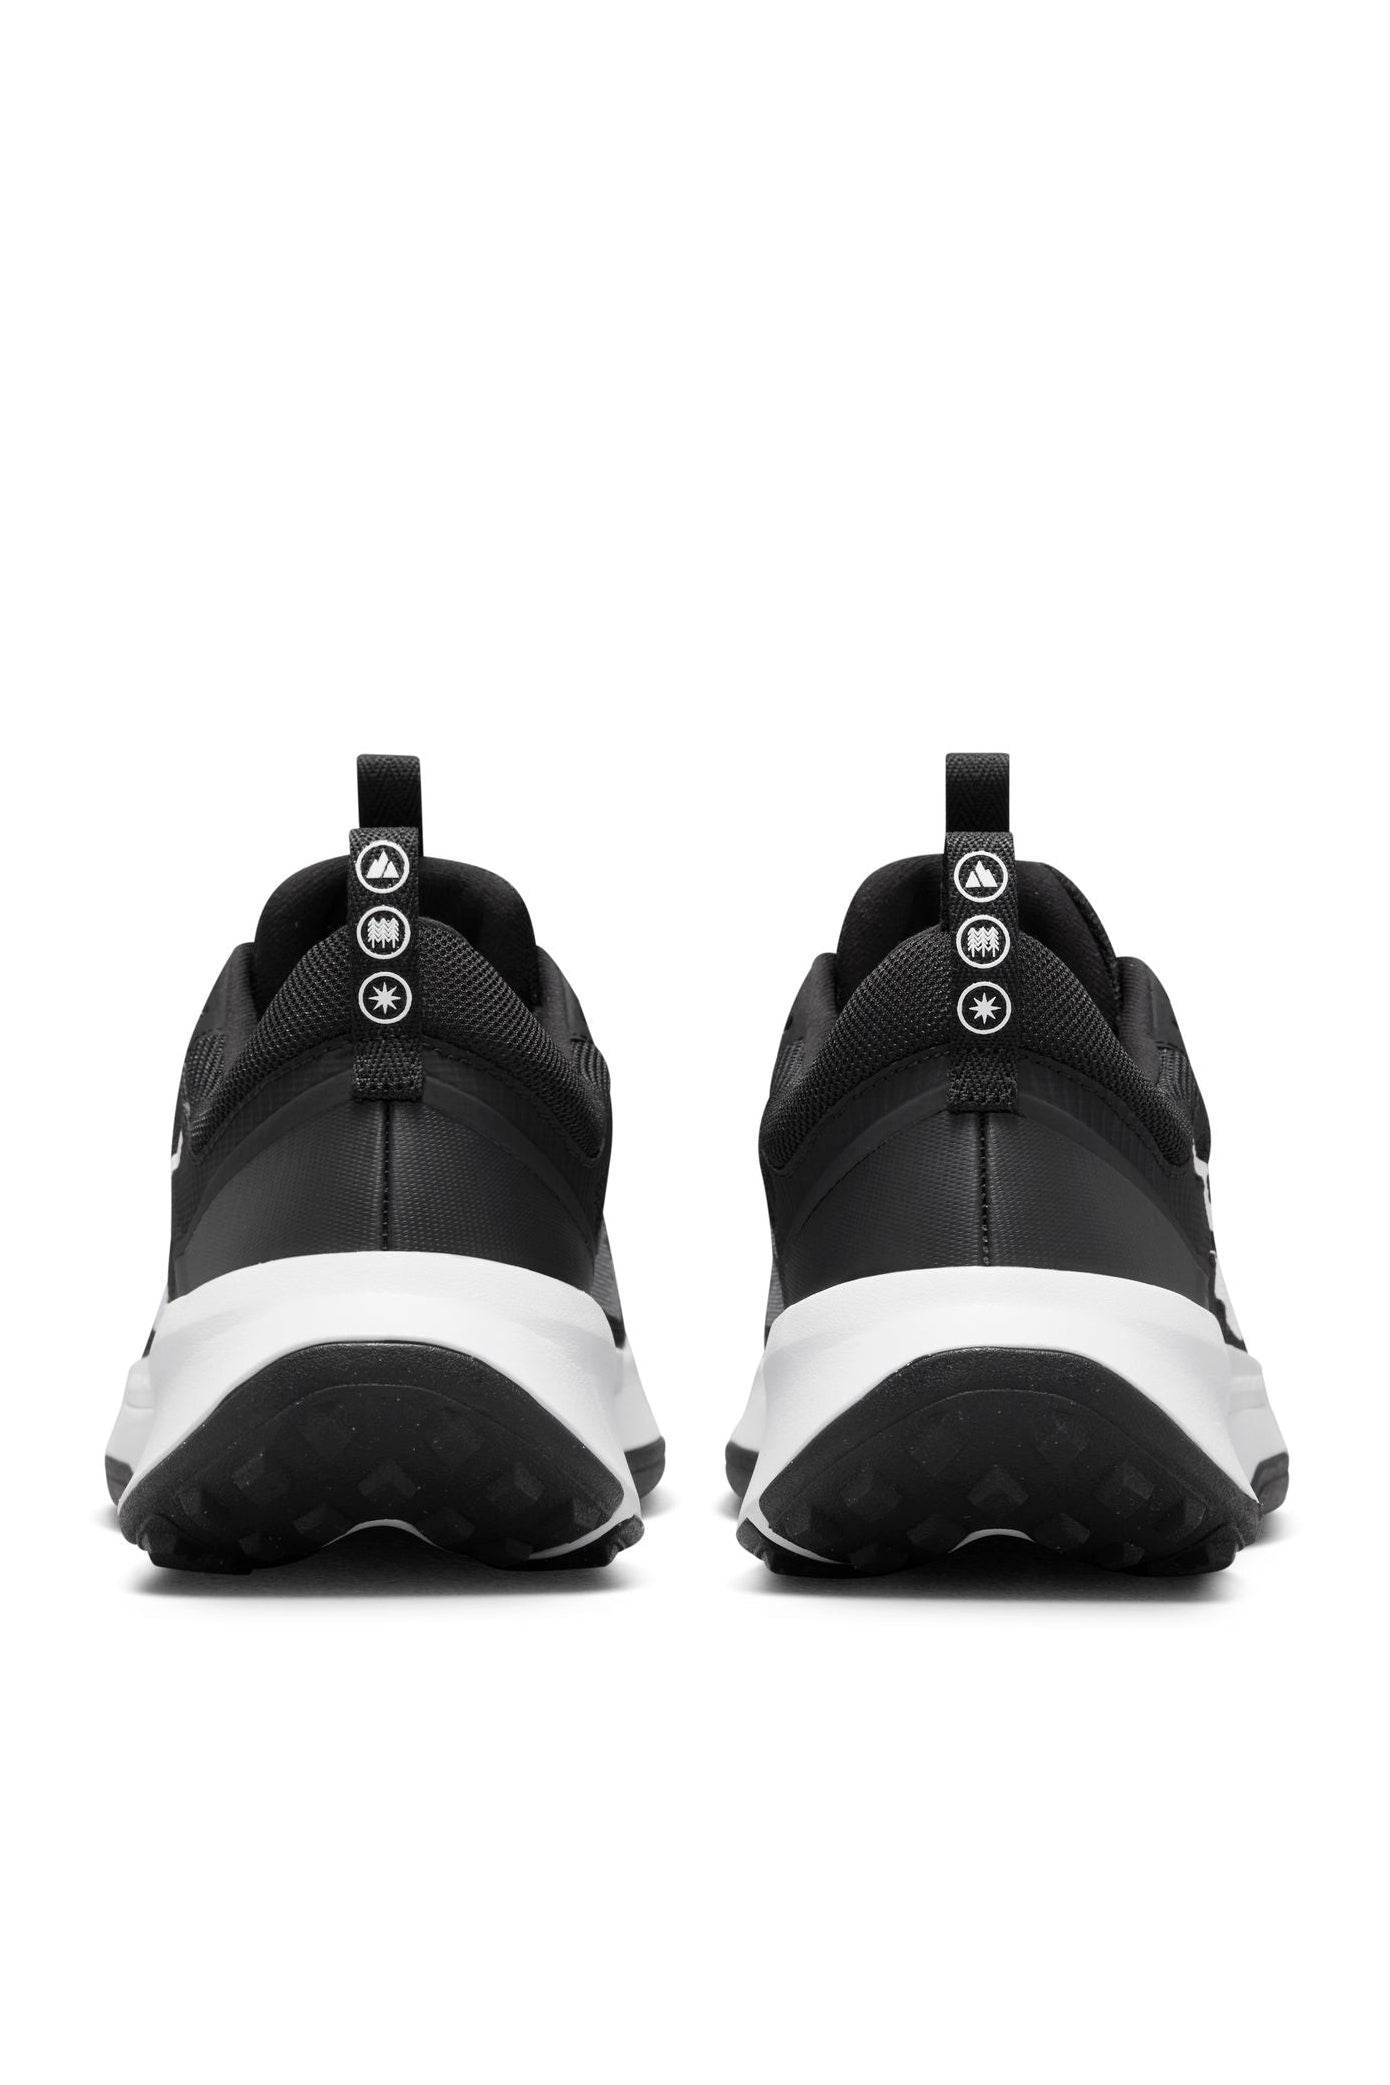 נעלי ספורט לגברים Juniper Trail 2 בצבע שחור ולבן